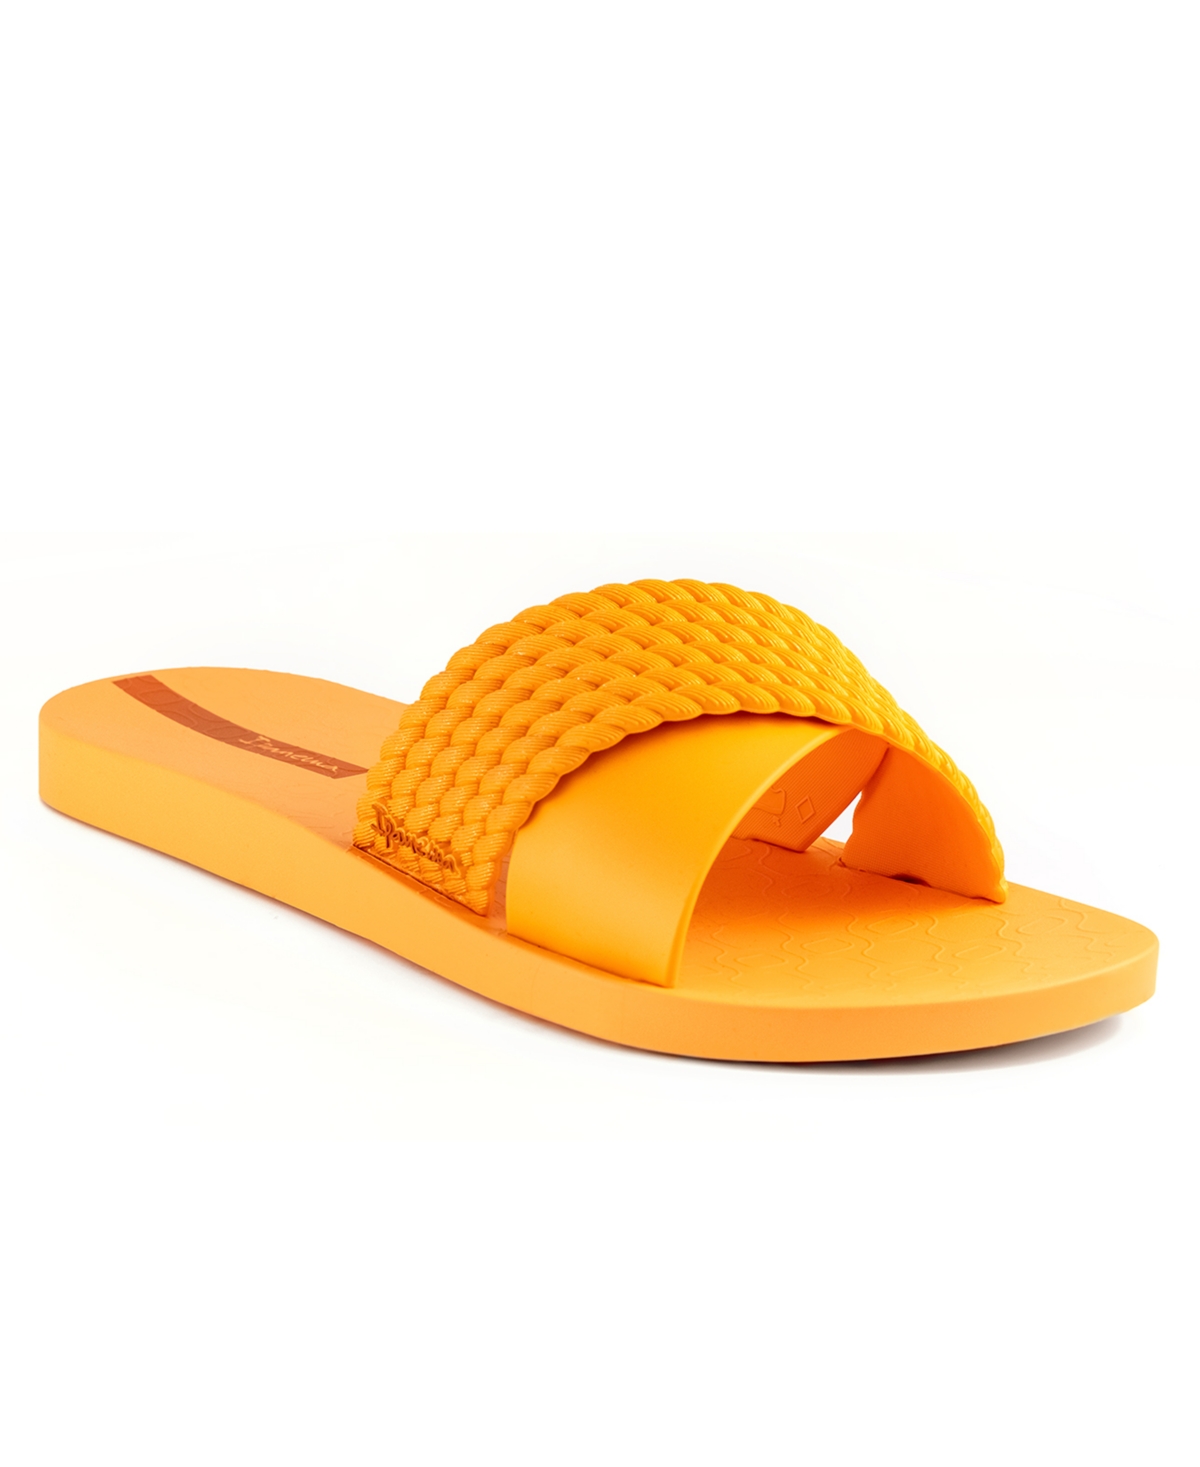 Ipanema Women's Street Ii Water-resistant Slide Sandals Women's Shoes In Orange/orange